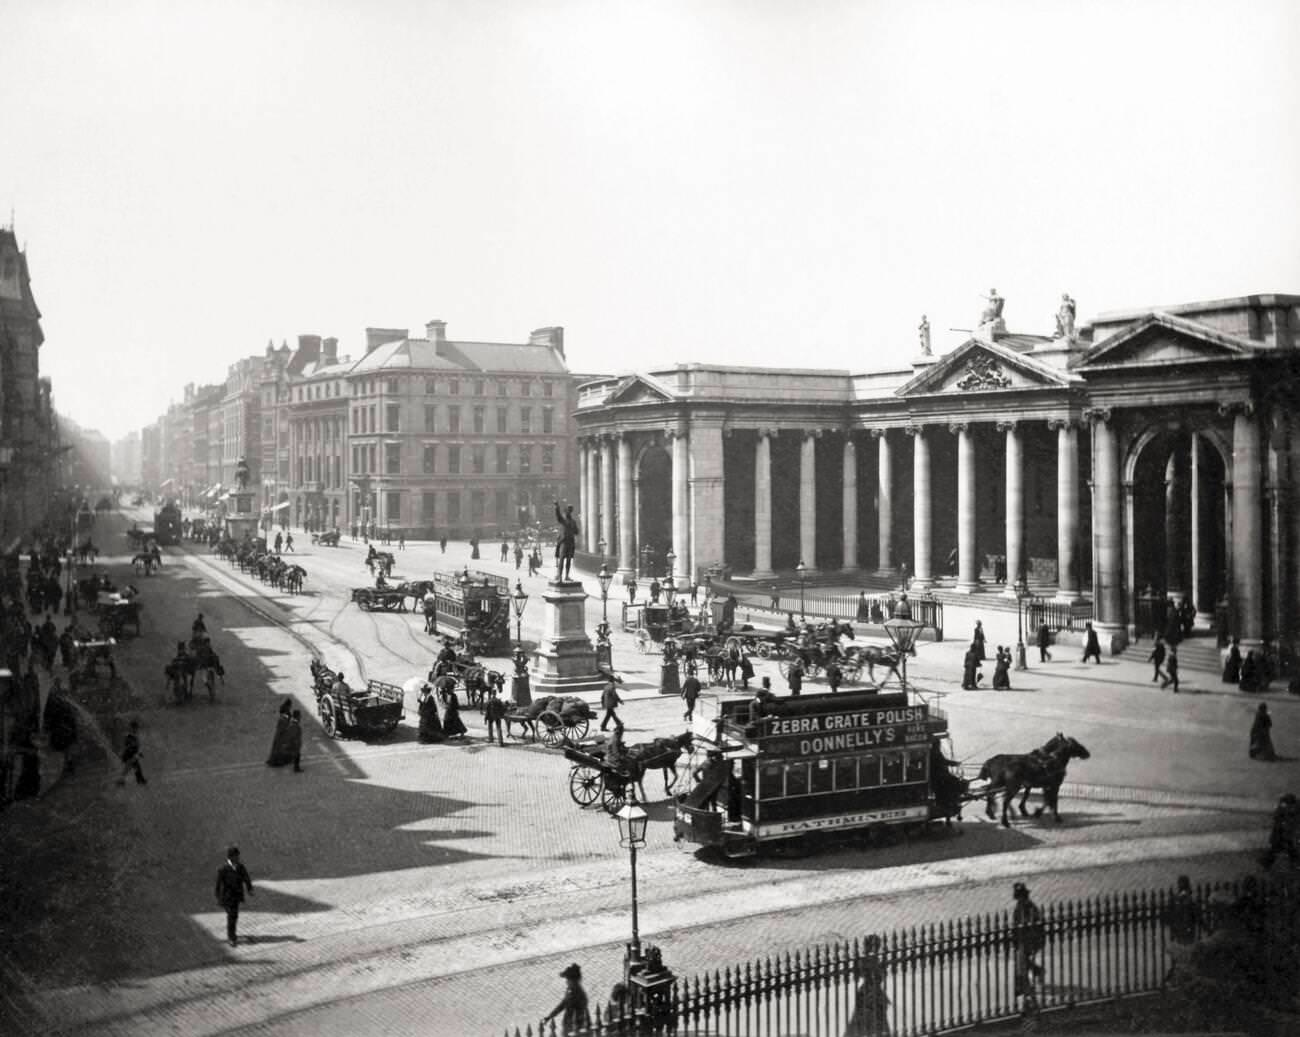 Street scene, Bank of Ireland, Dublin, Ireland, 1890s